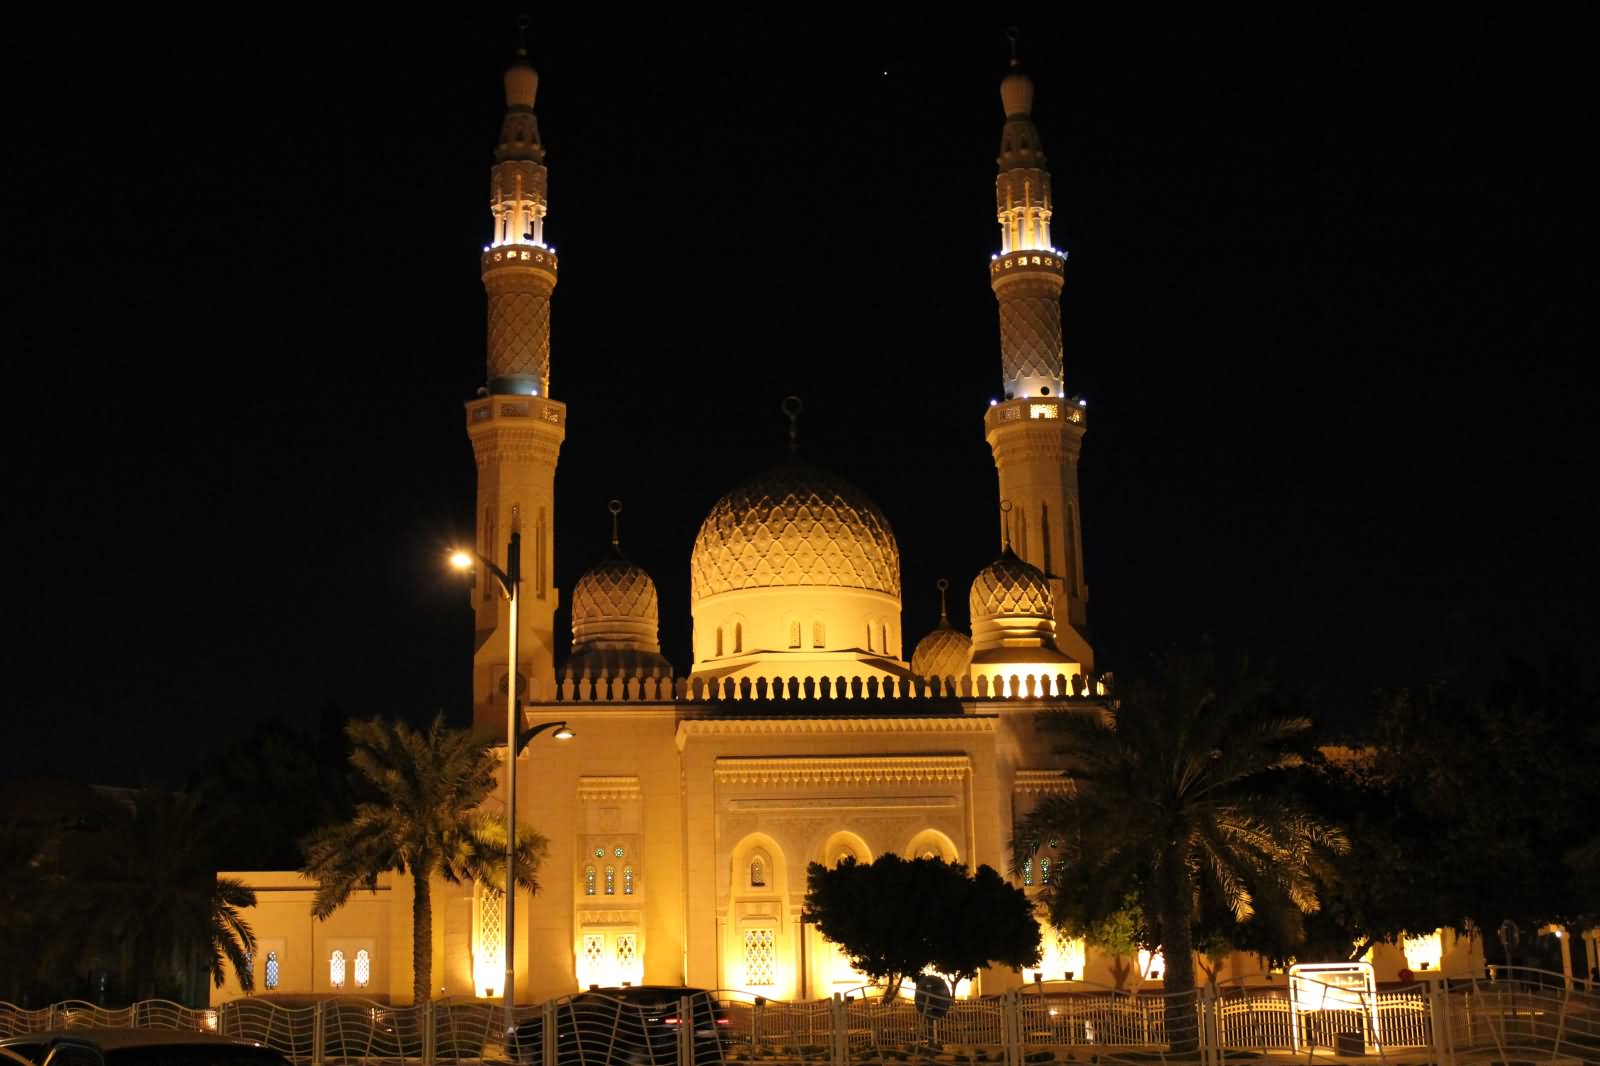 Jumeirah Mosque Illuminated At Night